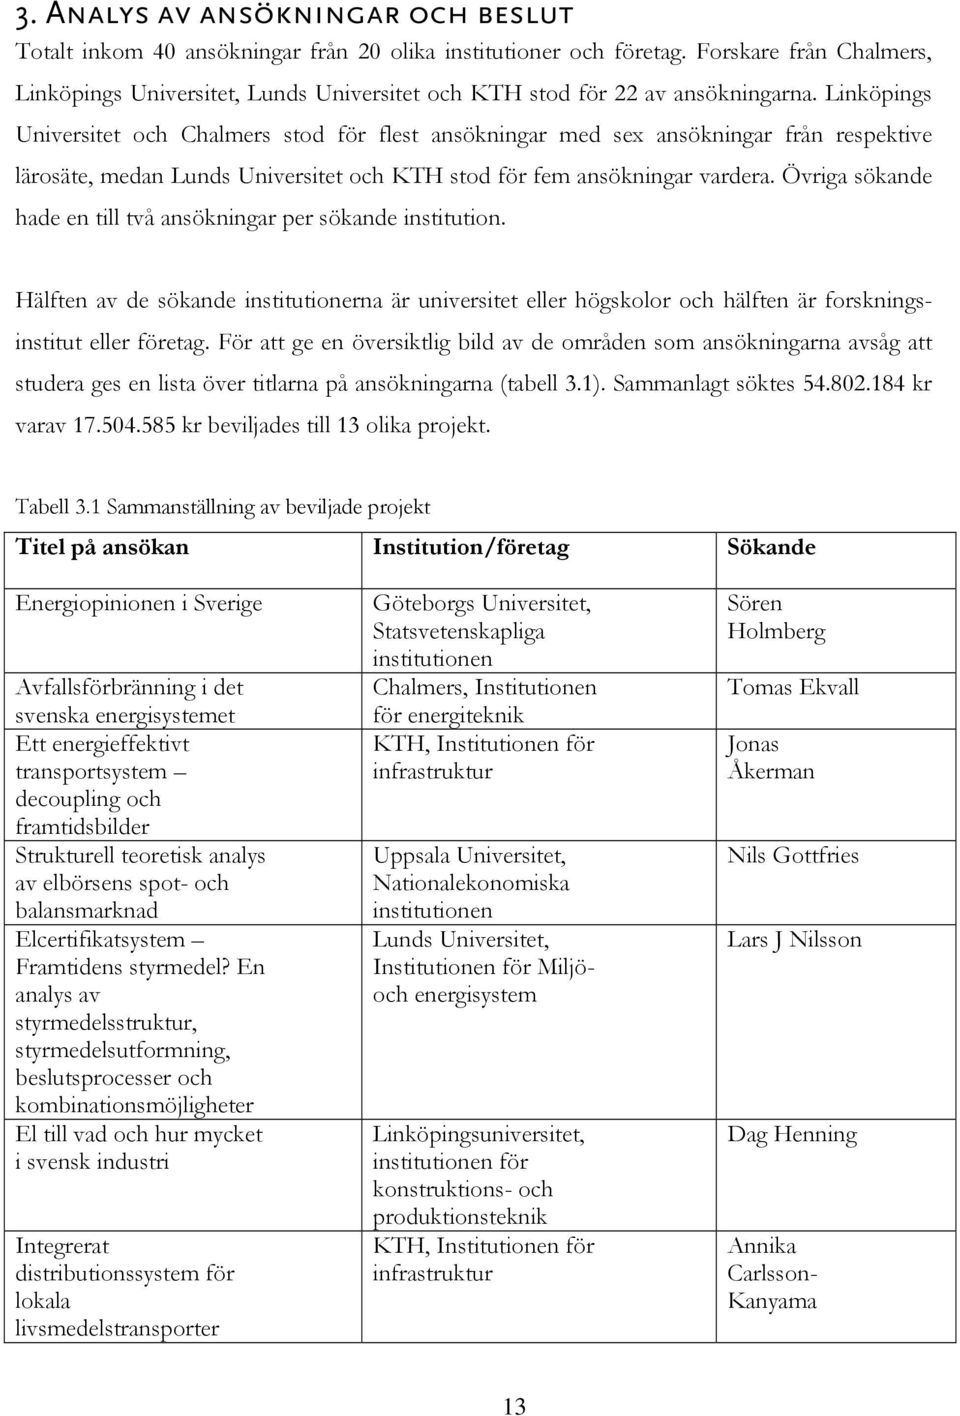 Linköpings Universitet och Chalmers stod för flest ansökningar med sex ansökningar från respektive lärosäte, medan Lunds Universitet och KTH stod för fem ansökningar vardera.